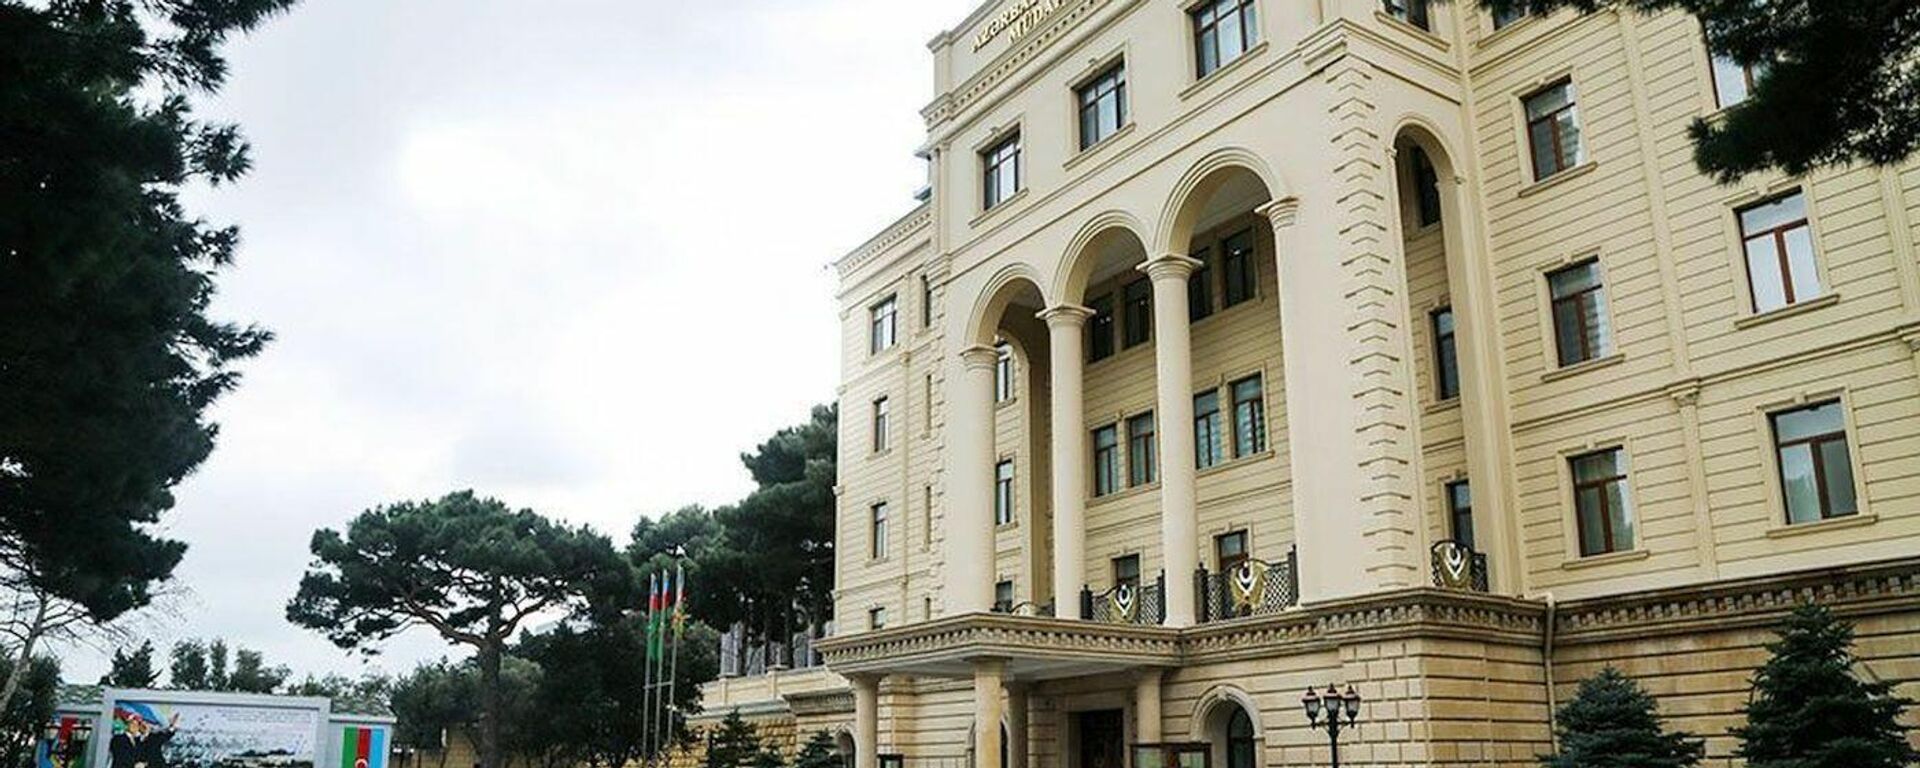 Здание министерства обороны Азербайджана здание Минобороны АР  - Sputnik Азербайджан, 1920, 07.12.2021